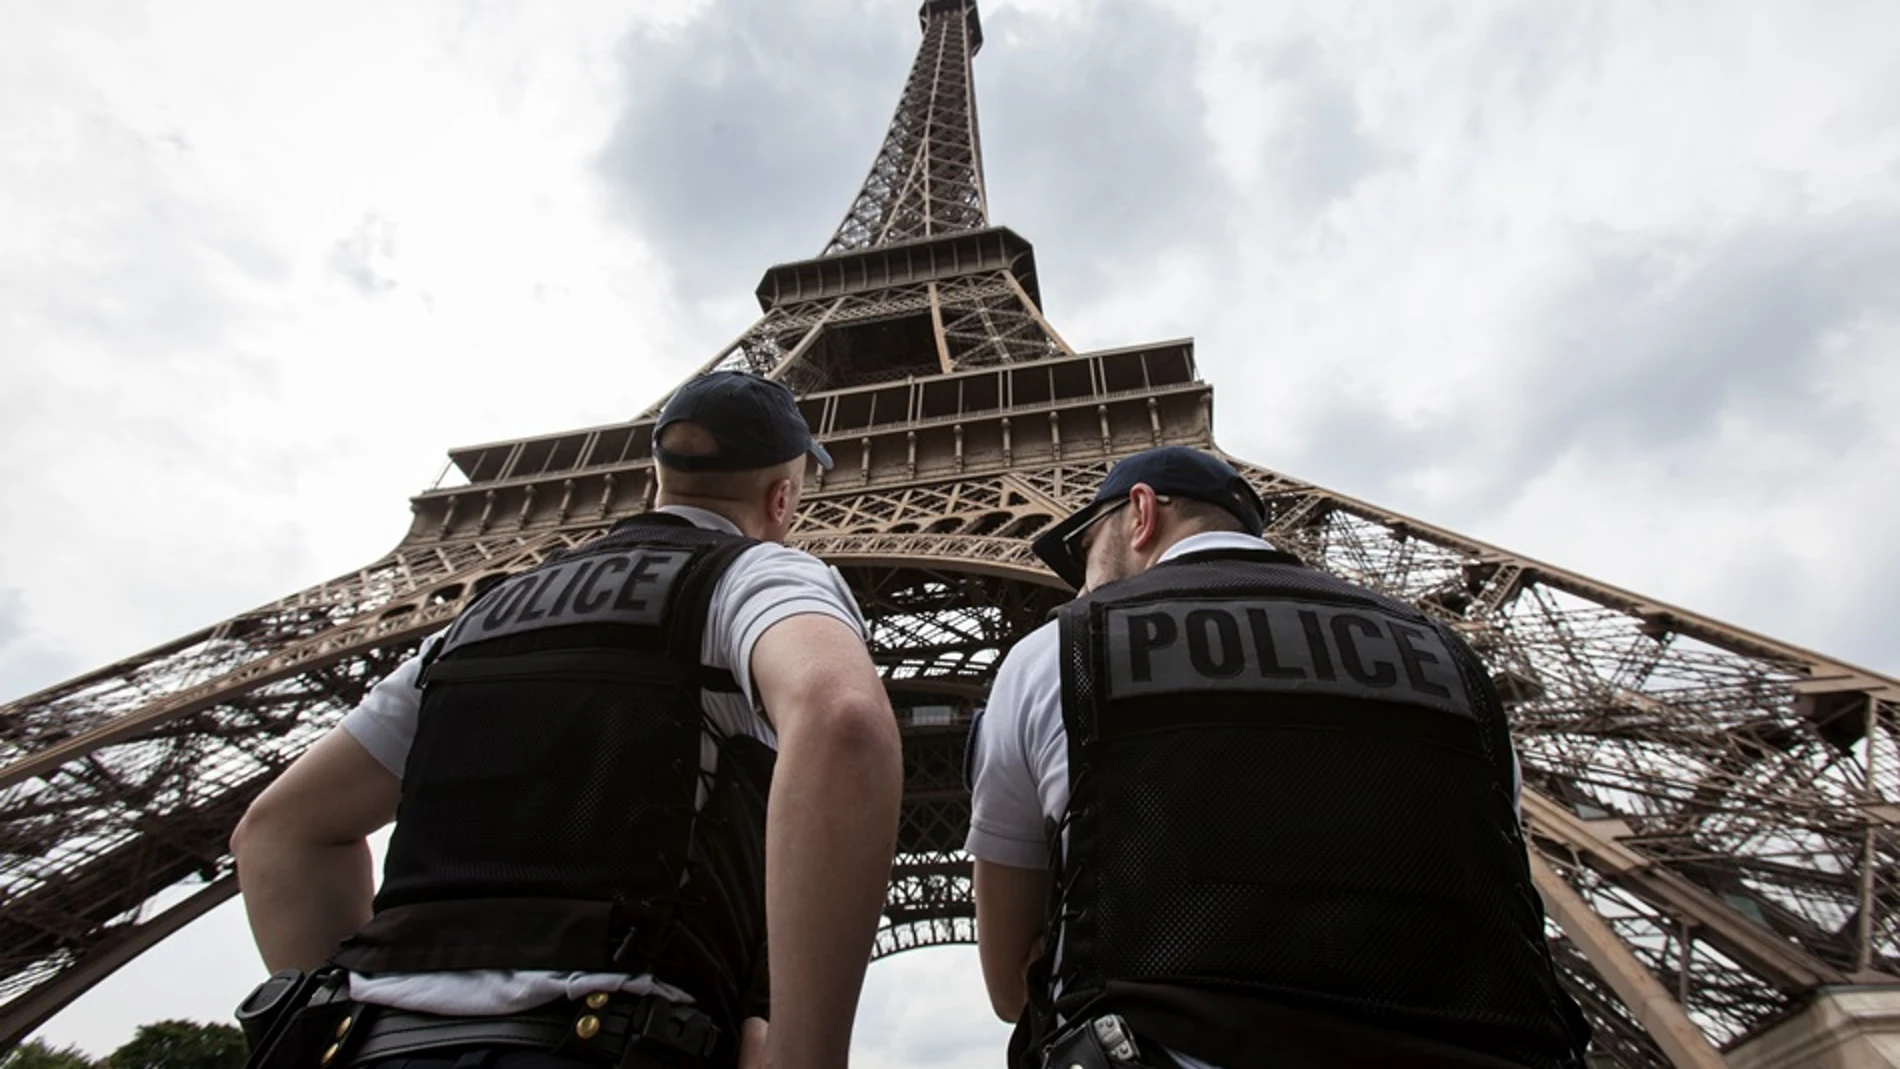 Fotografía de archivo de policías franceses bajo la Torre Eiffel en París